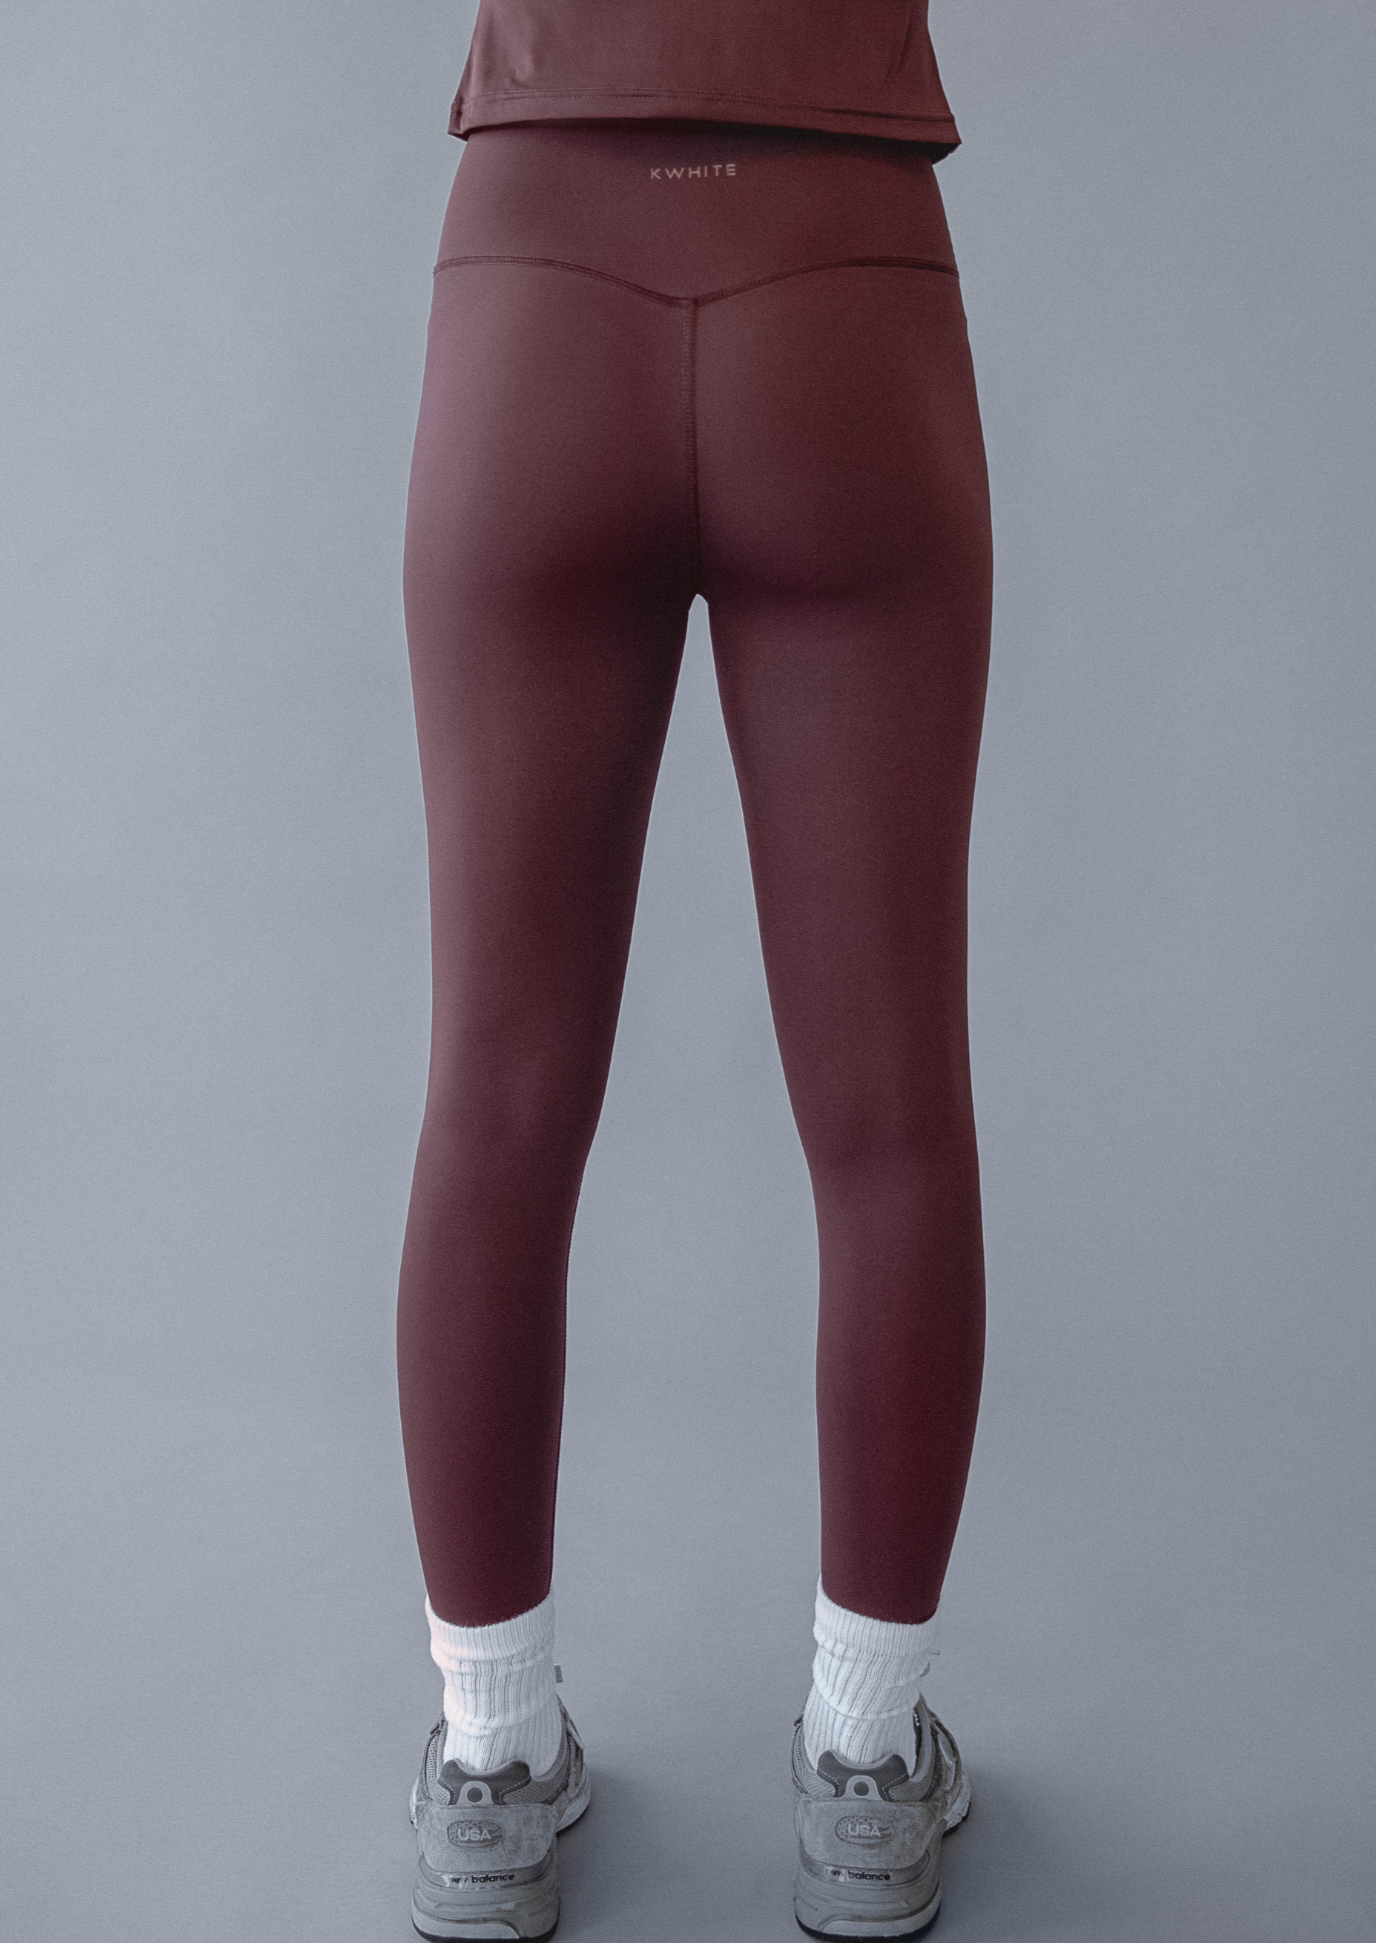 Lululemon align leggings , size 2/4 (US)